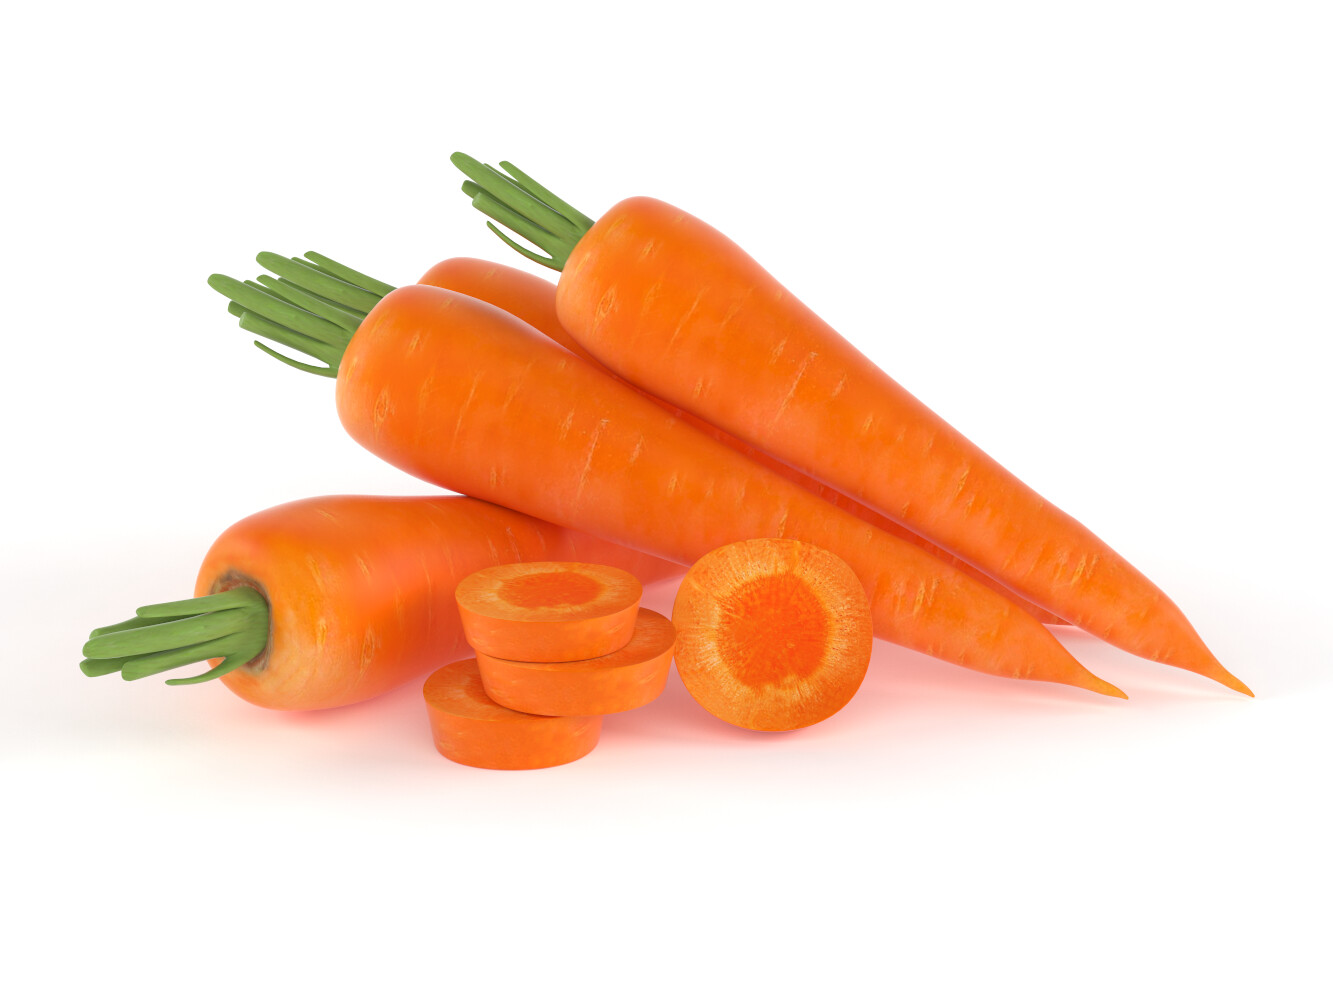 ArtStation - Carrot